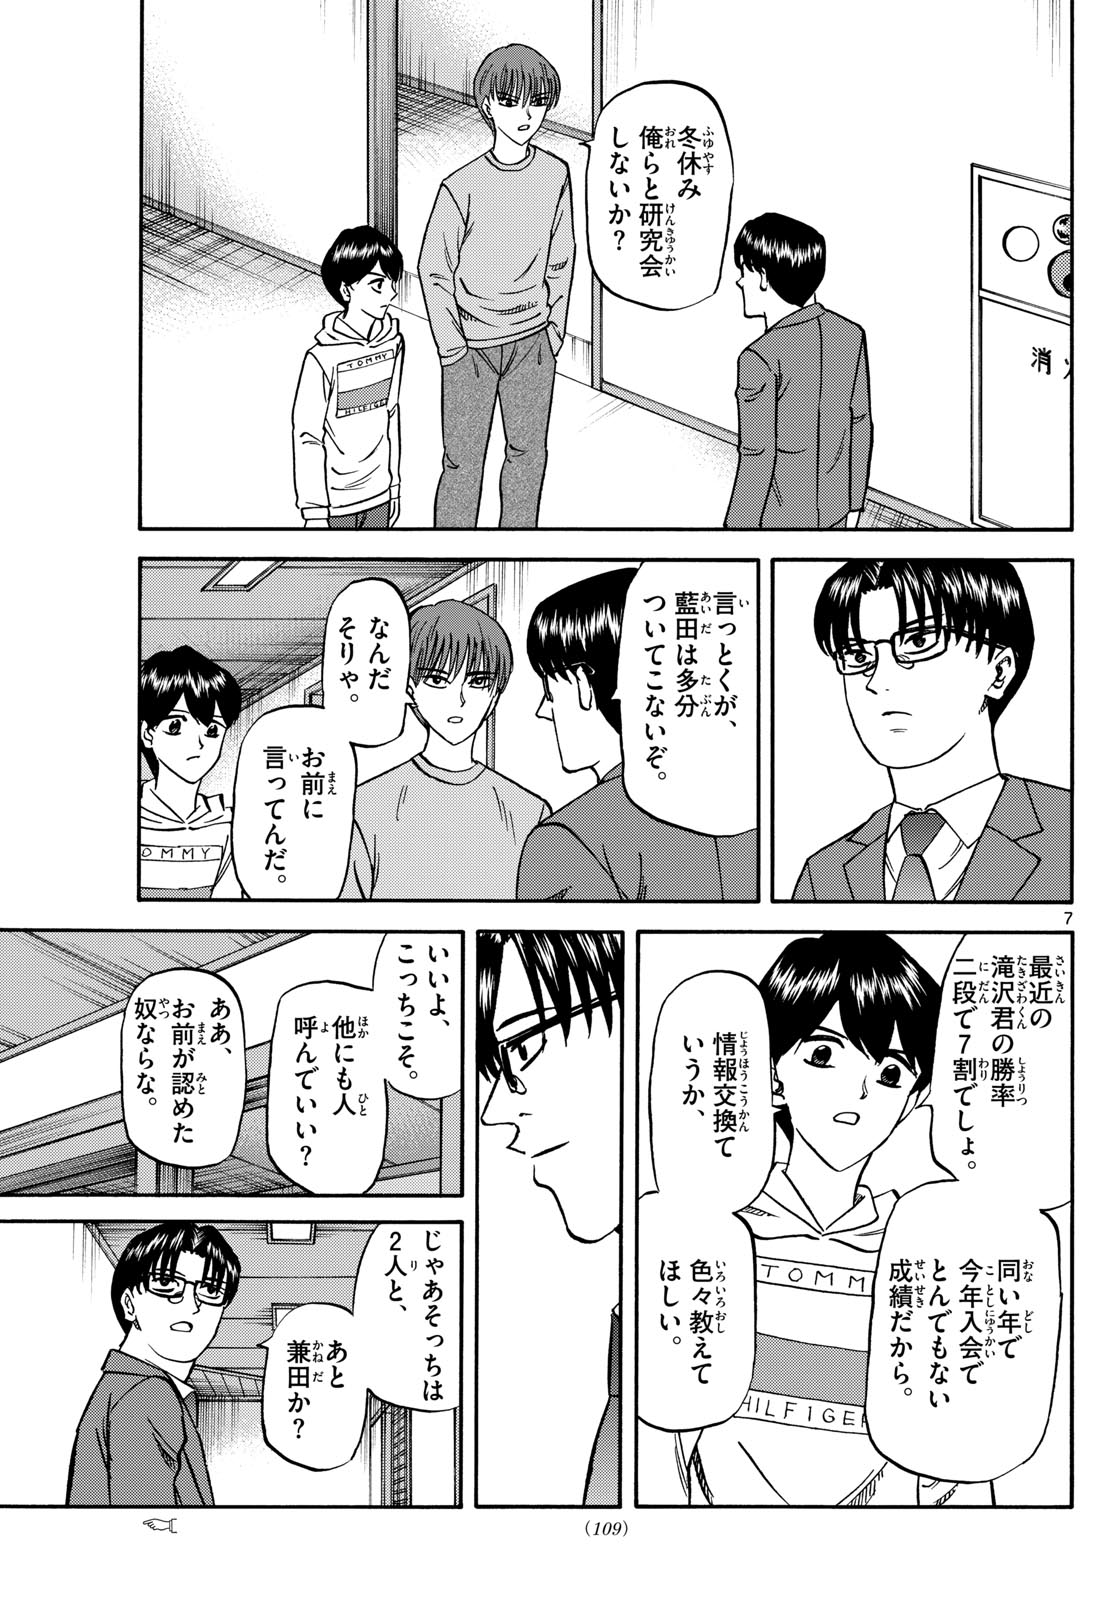 Tatsu to Ichigo - Chapter 172 - Page 7